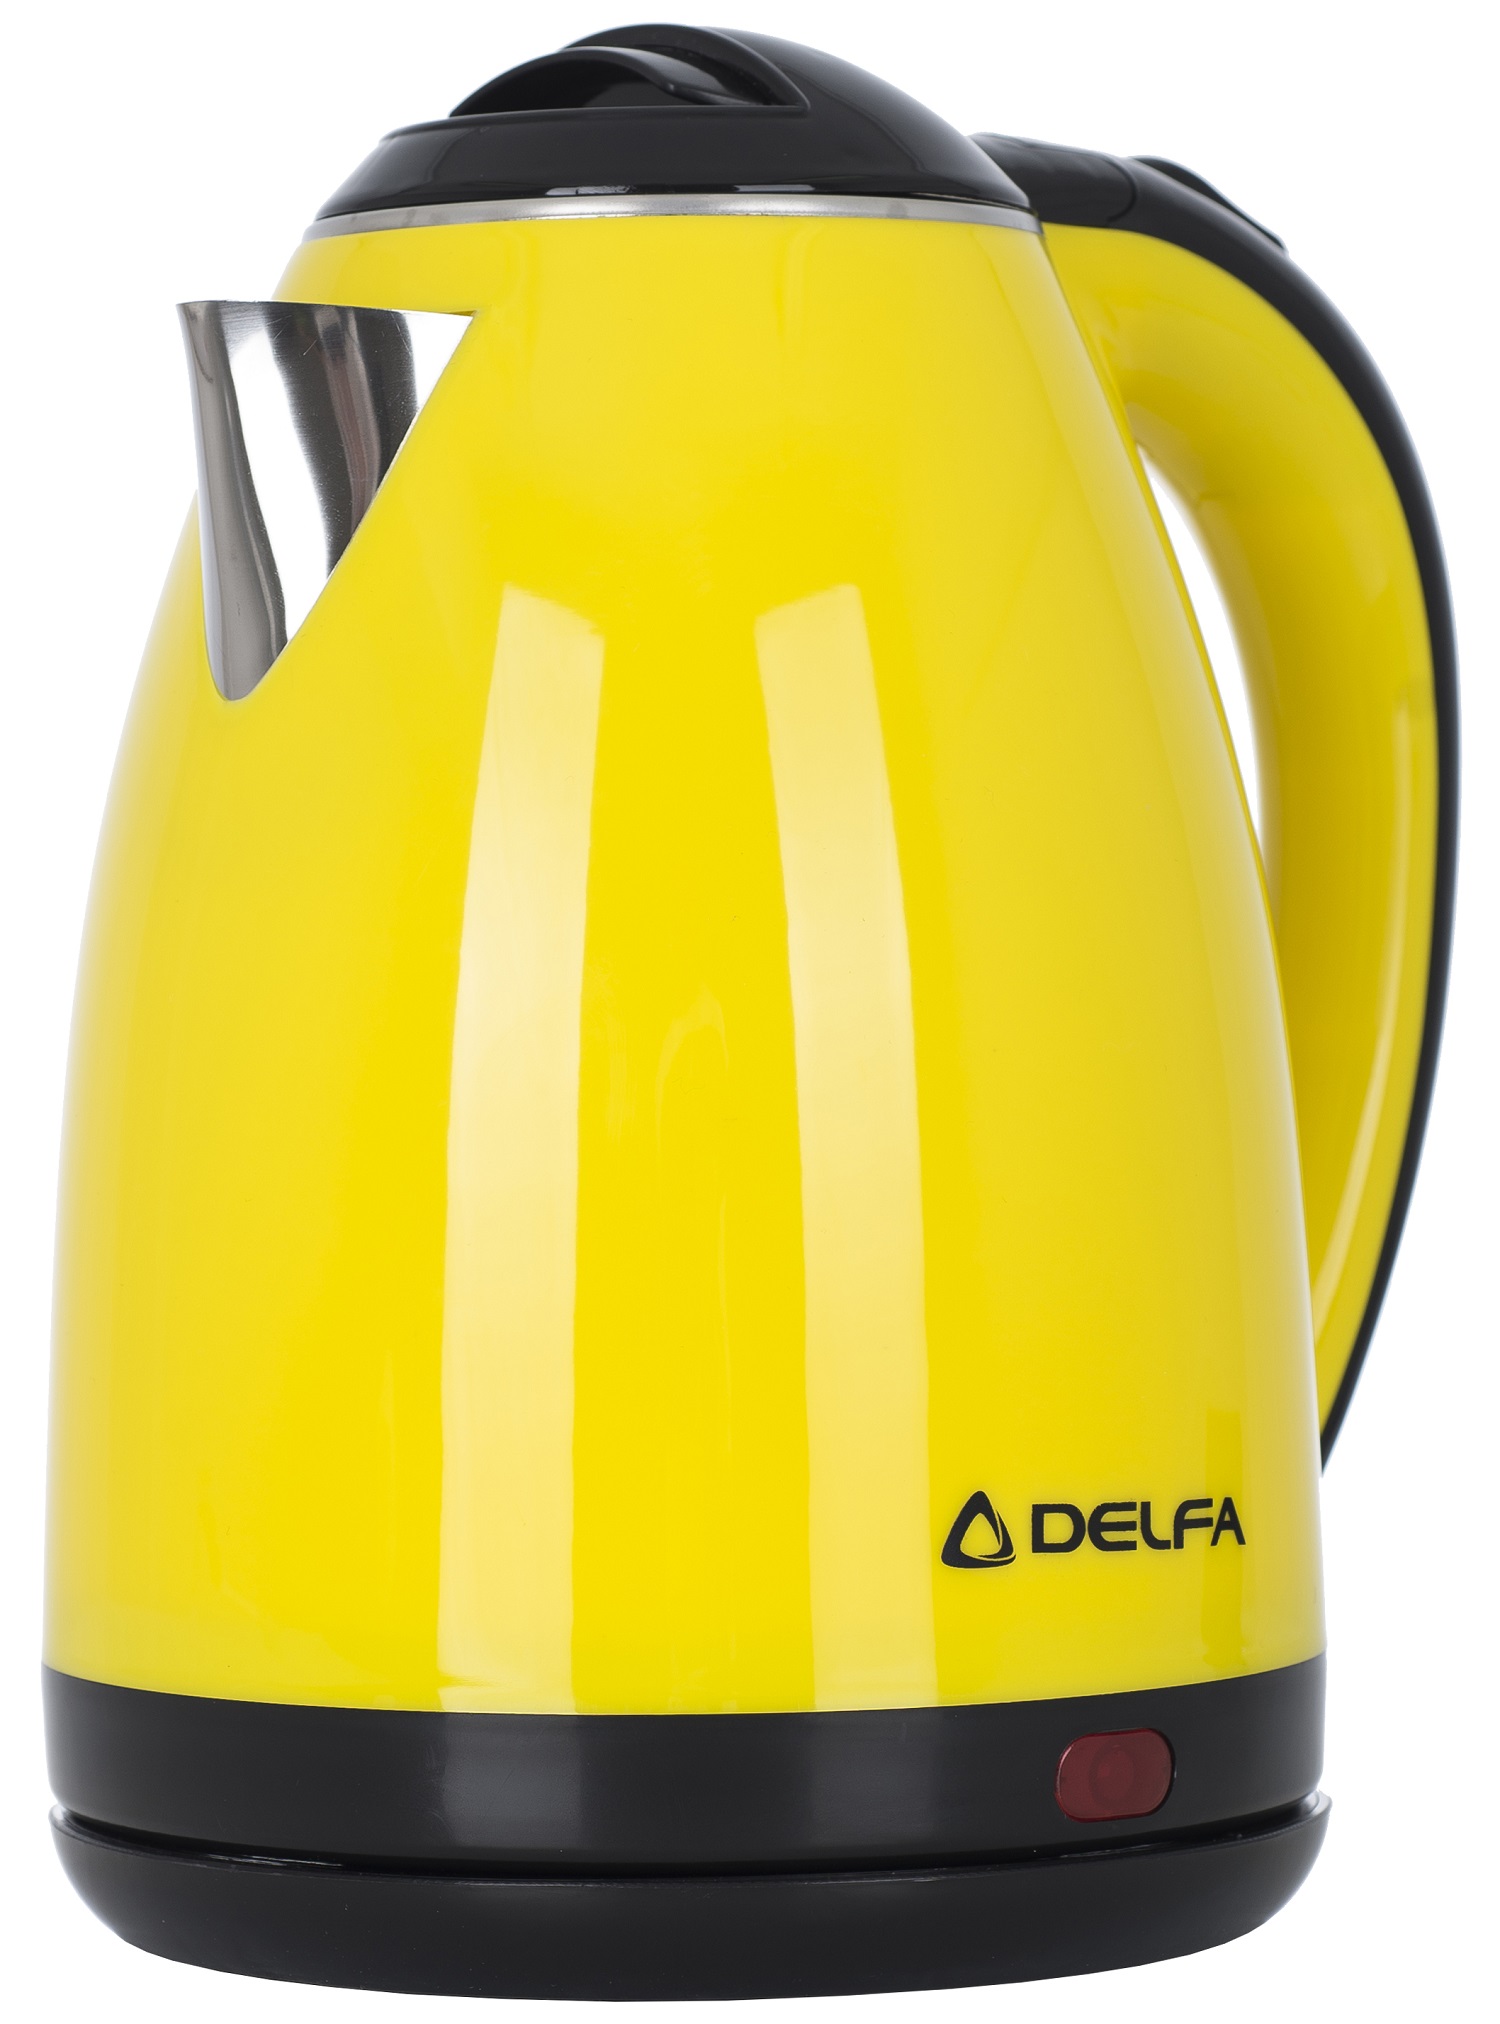 Цена электрочайник Delfa DK 3530 X Yellow в Кривом Роге